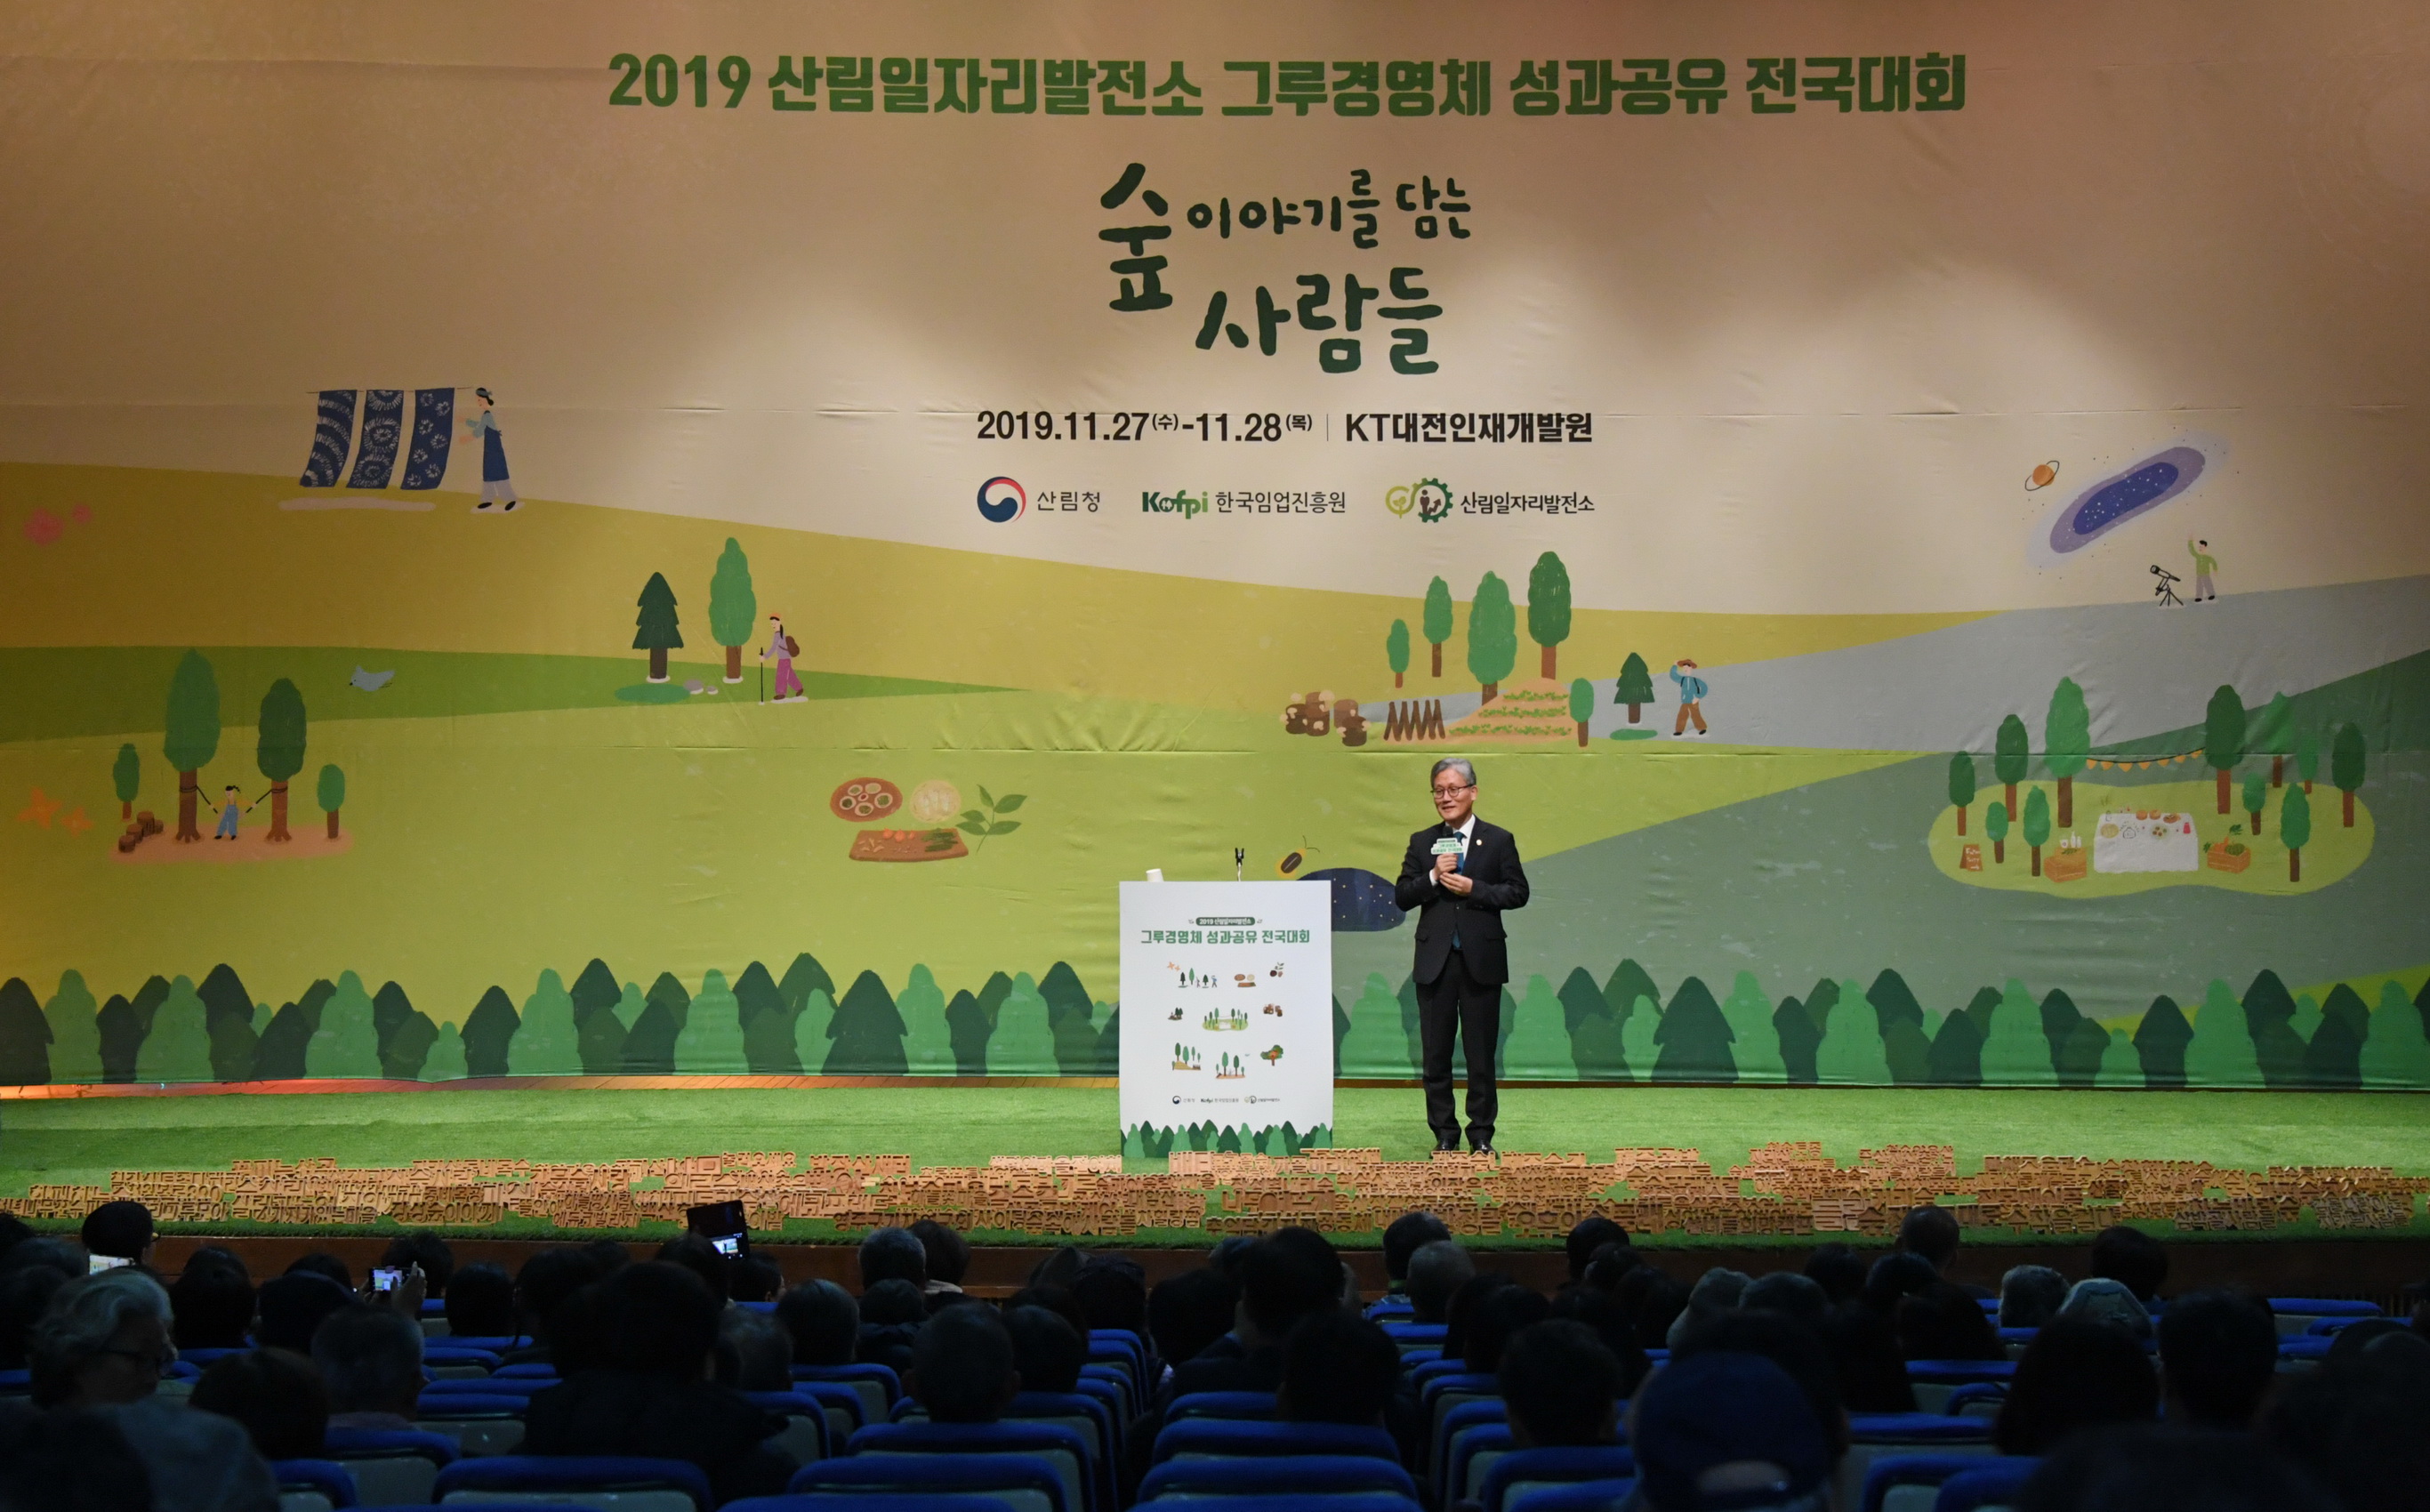 김재현 산림청장, 2019 산림일자리발전소 그루경영체 성과공유 전국대회 특강 